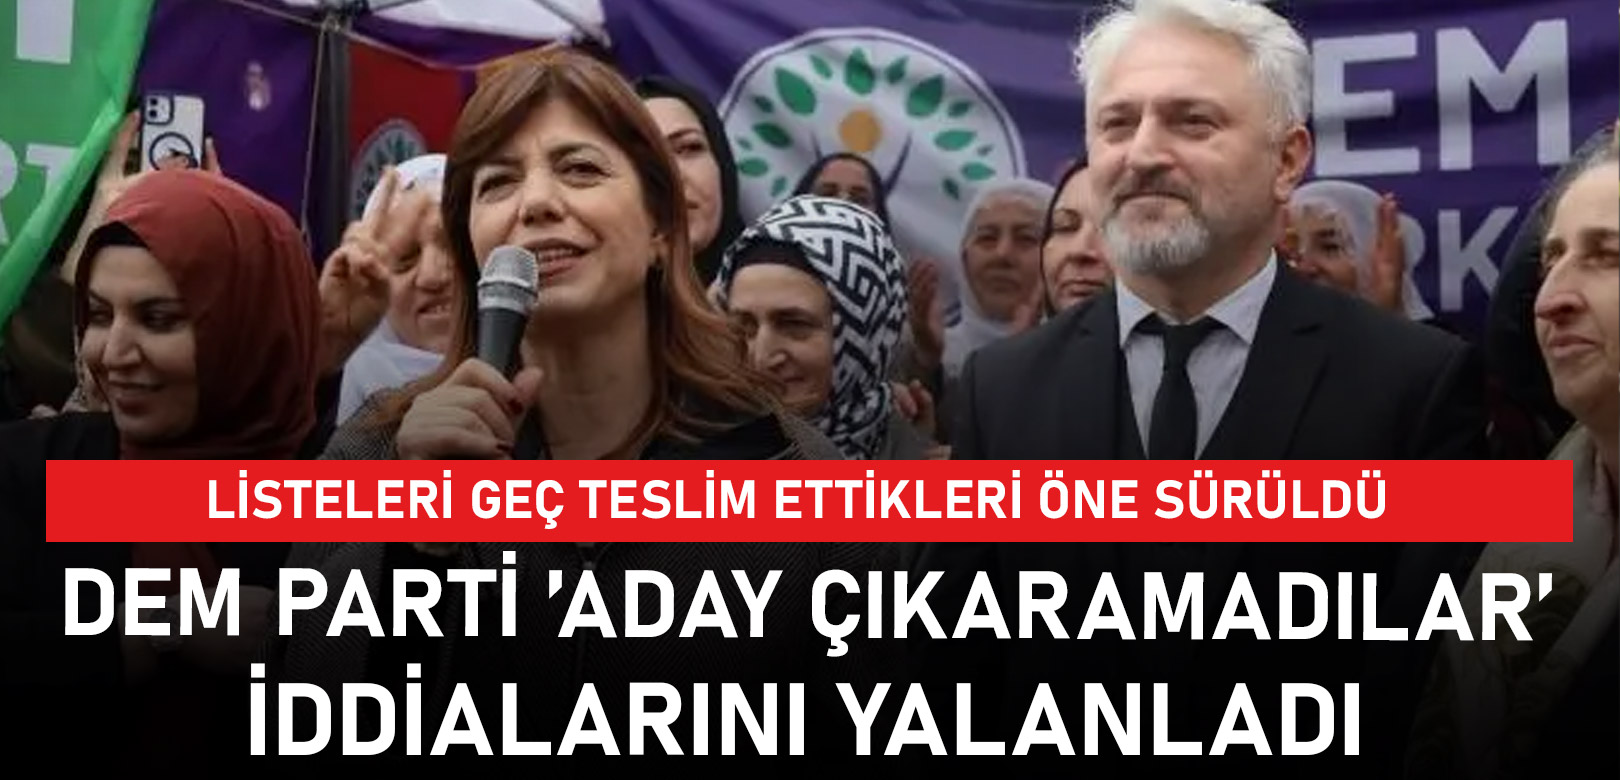 DEM Parti'nin İstanbul belirsizliği çözüldü: Başvuru kabul edildi